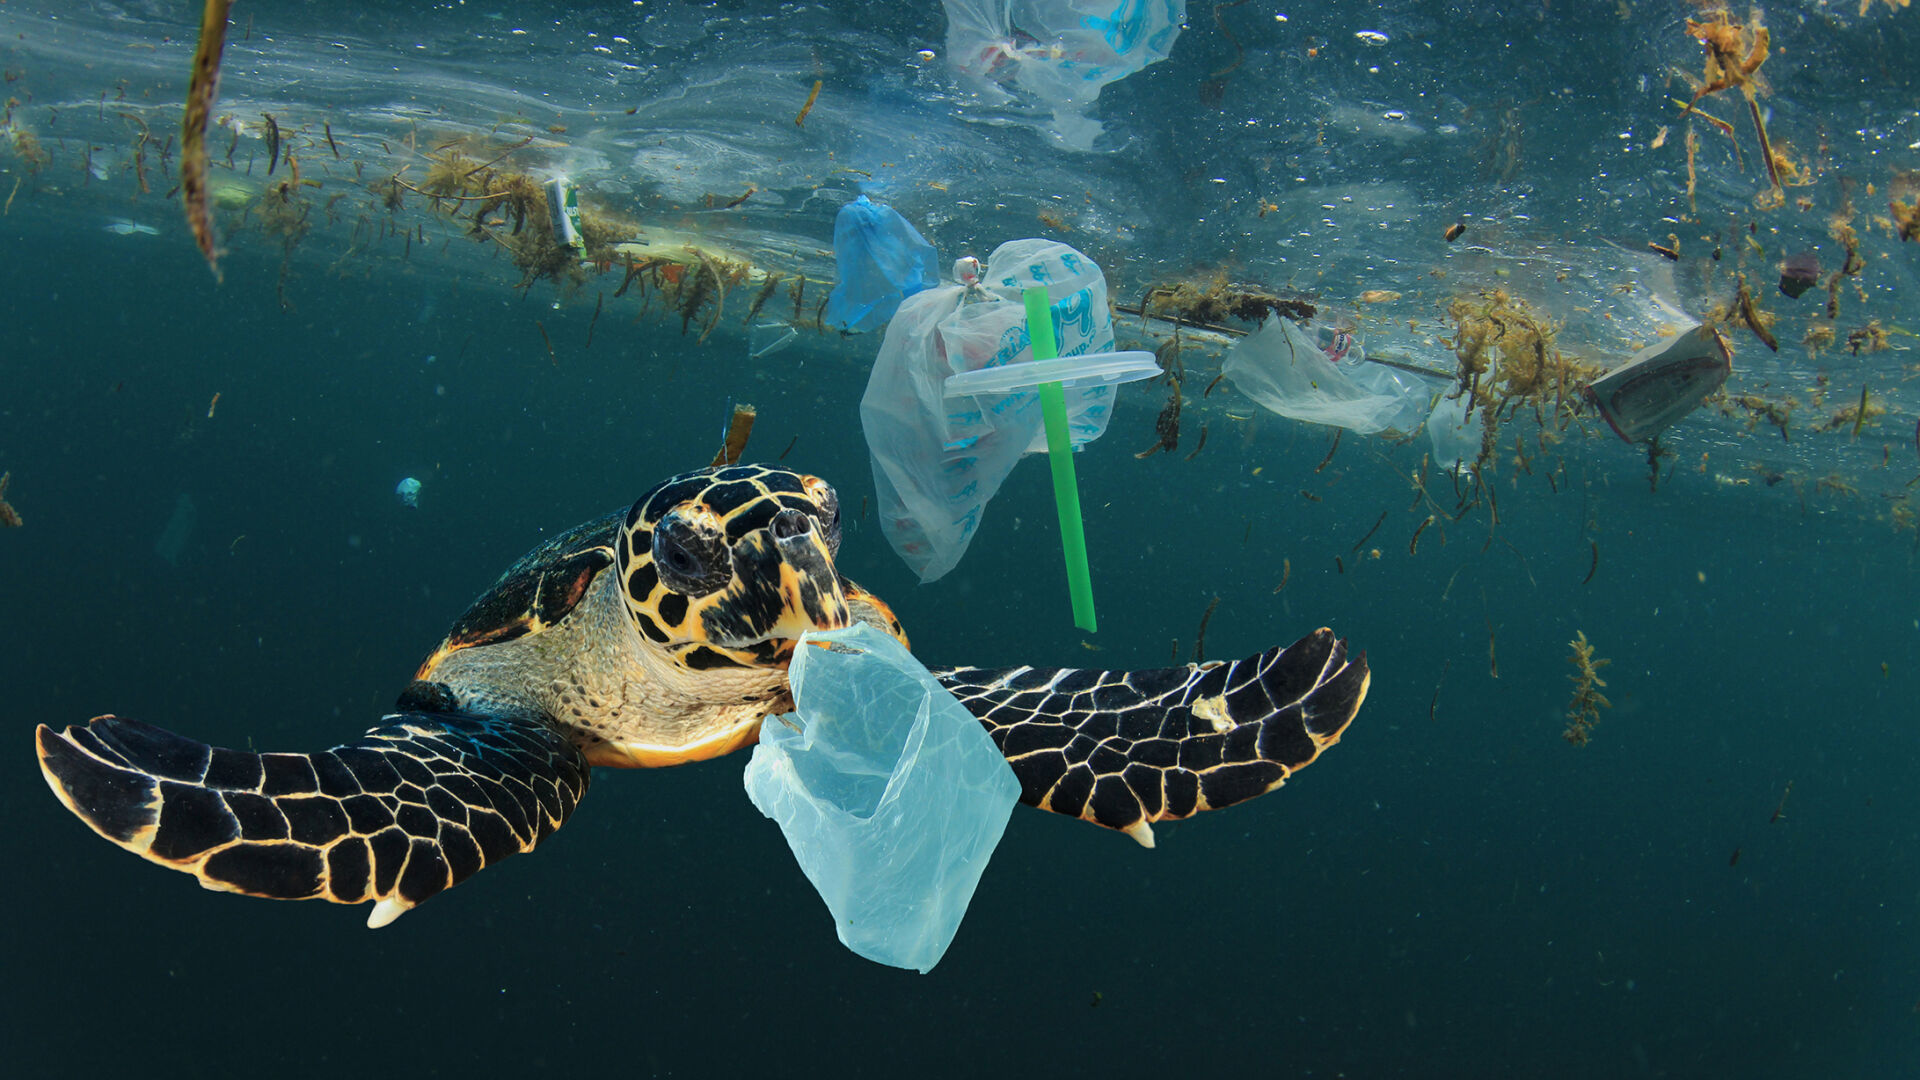 Plastik im Meer: Aus den Augen, in den Sinn!